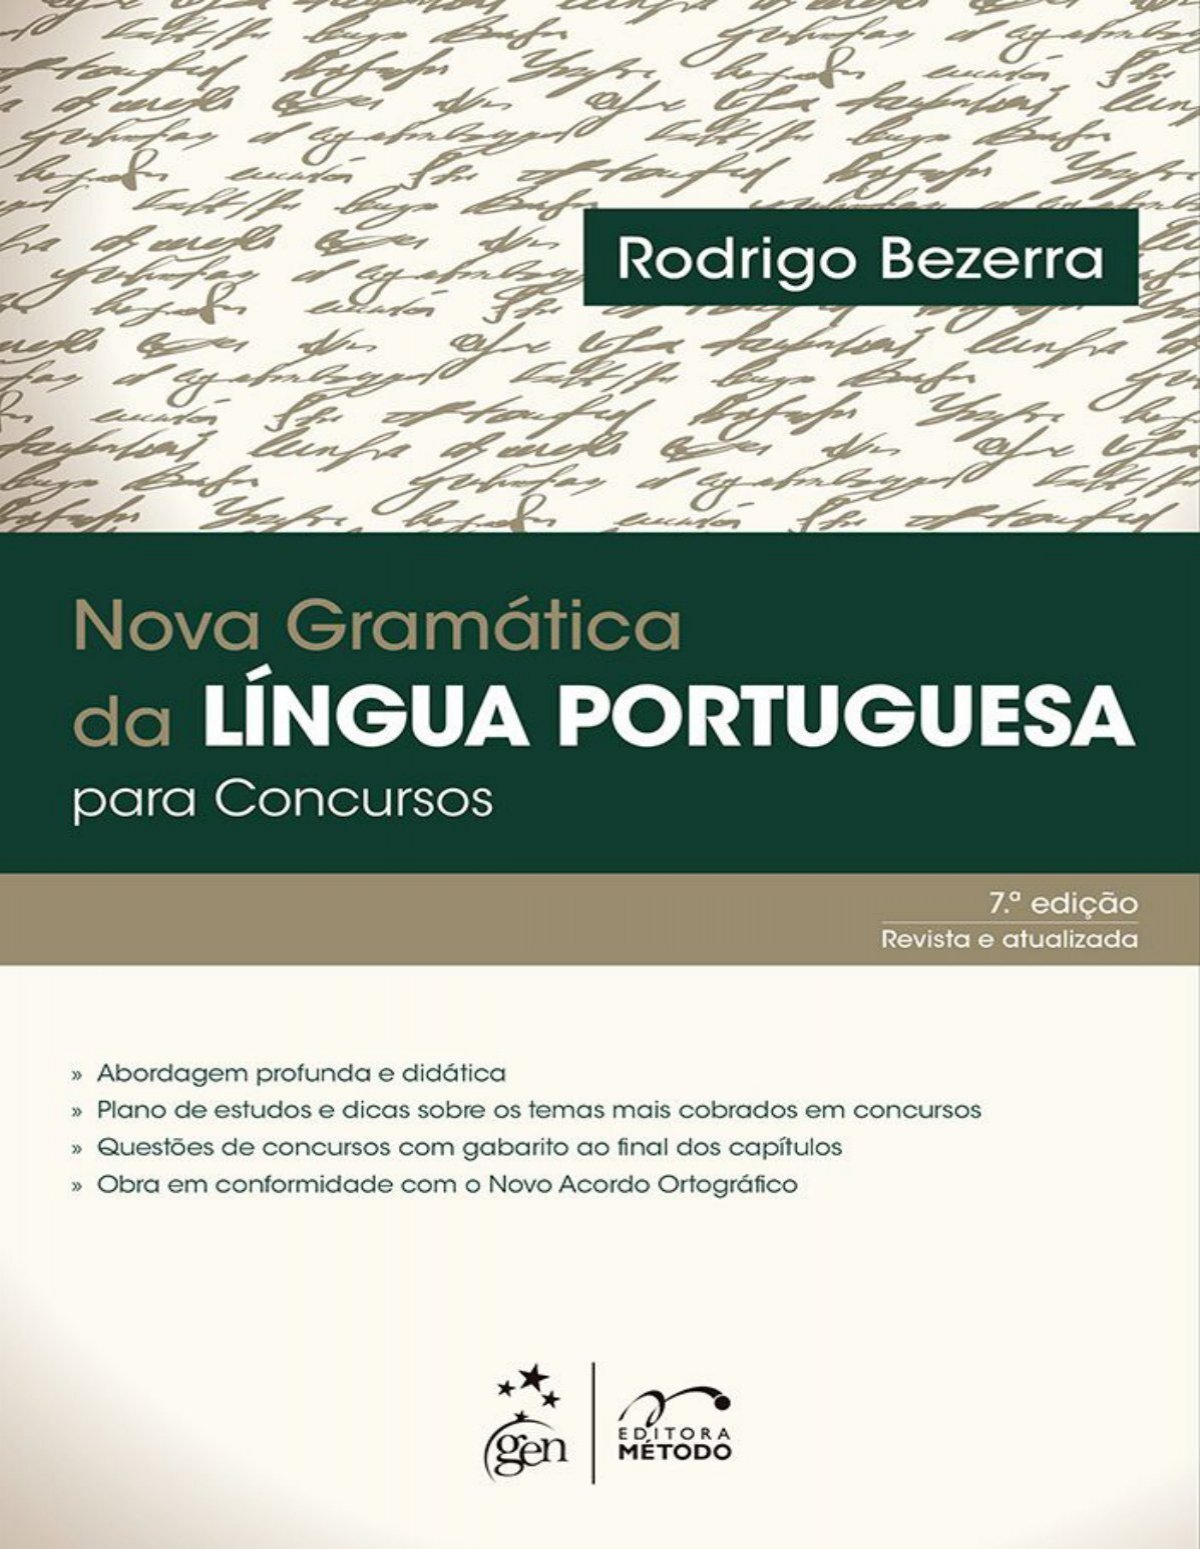 Dicas Diárias de Português - Palavras homófonas (“x” e “ch